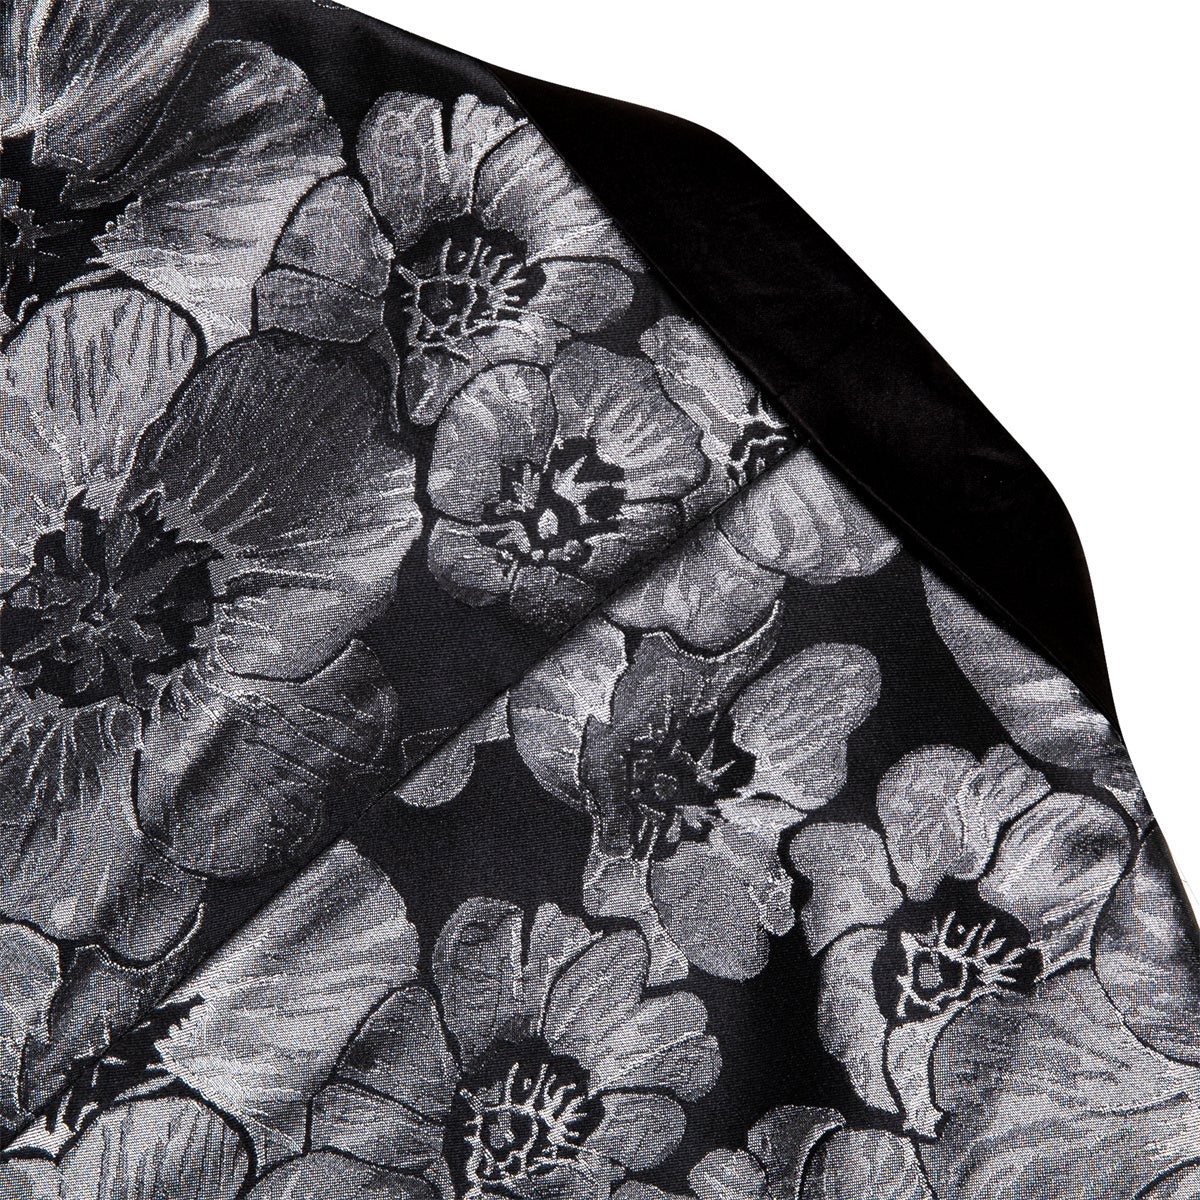 Men's Dress Party Black Floral Suit Jacket Slim One Button Stylish Blazer